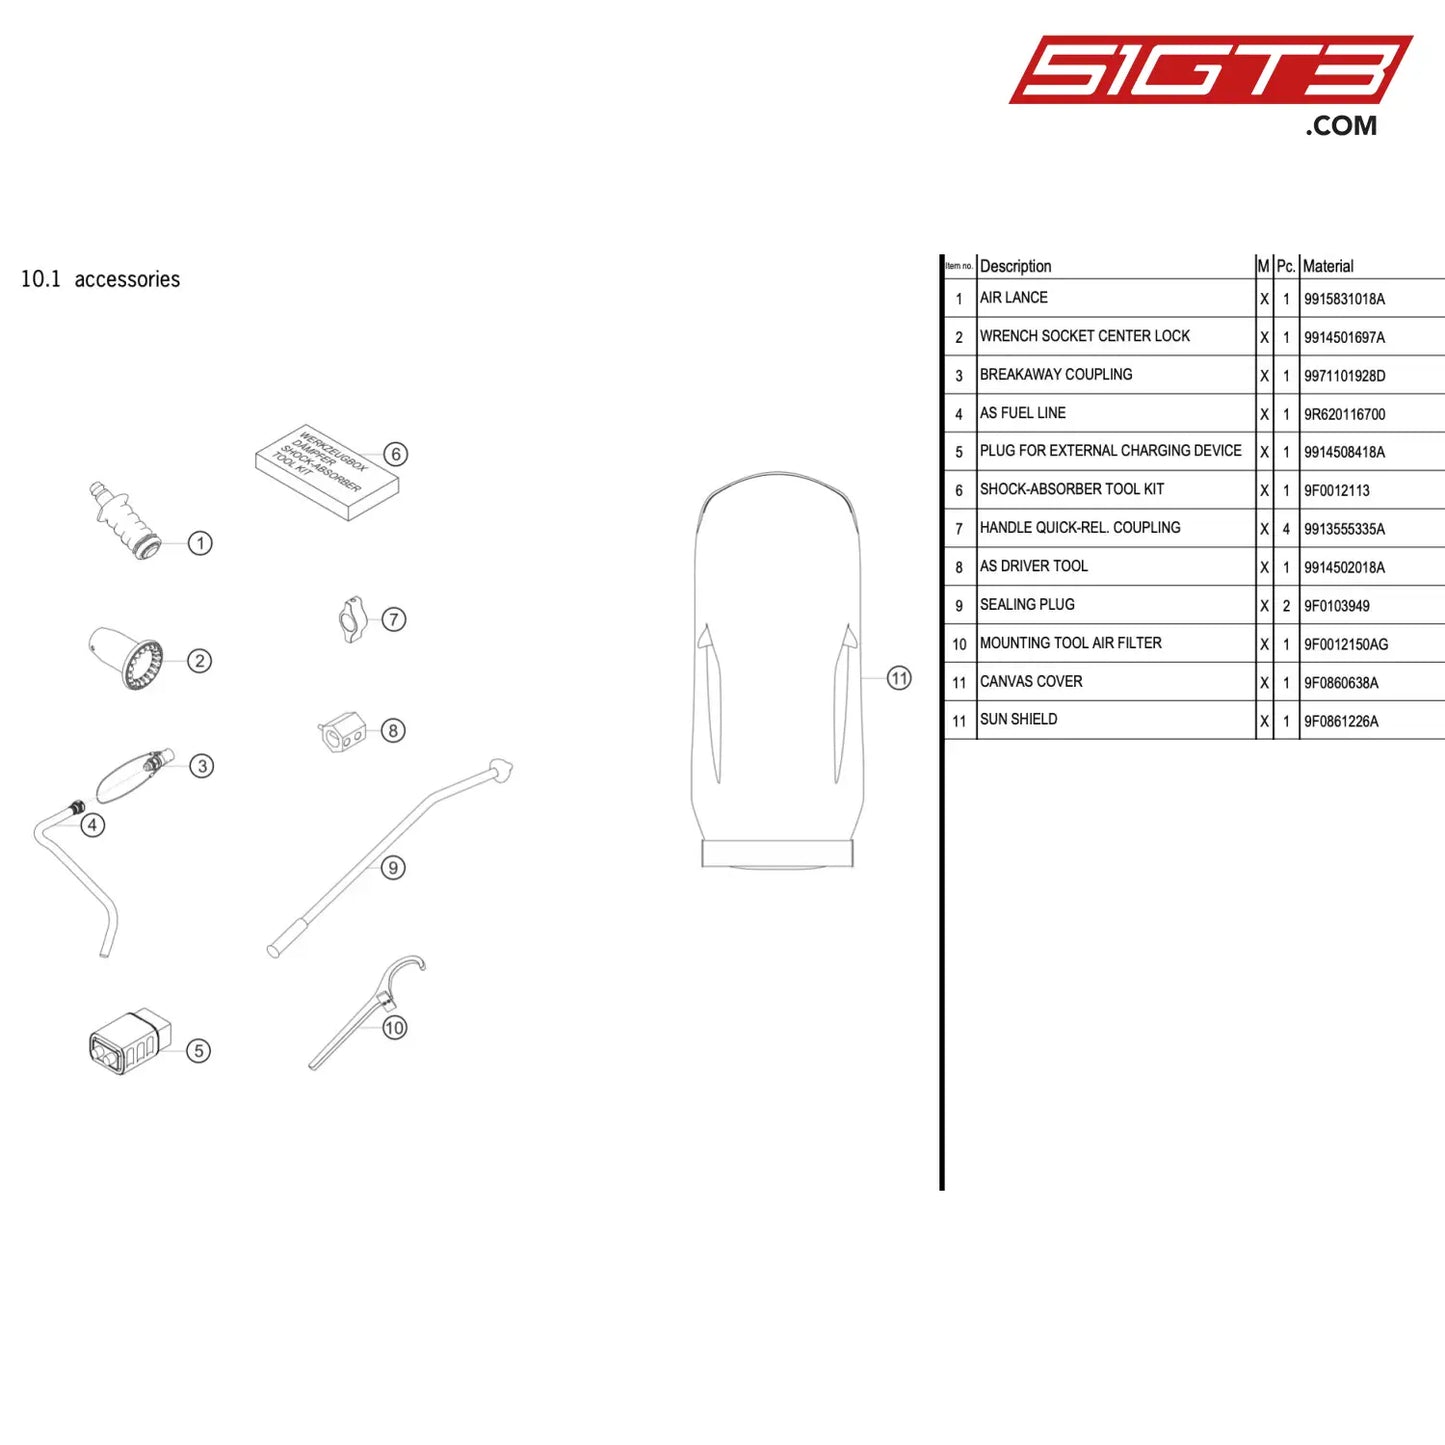 As Driver Tool - 9914502018A [Porsche 911 Gt3 R Type 991 (Gen 2)] Accessories